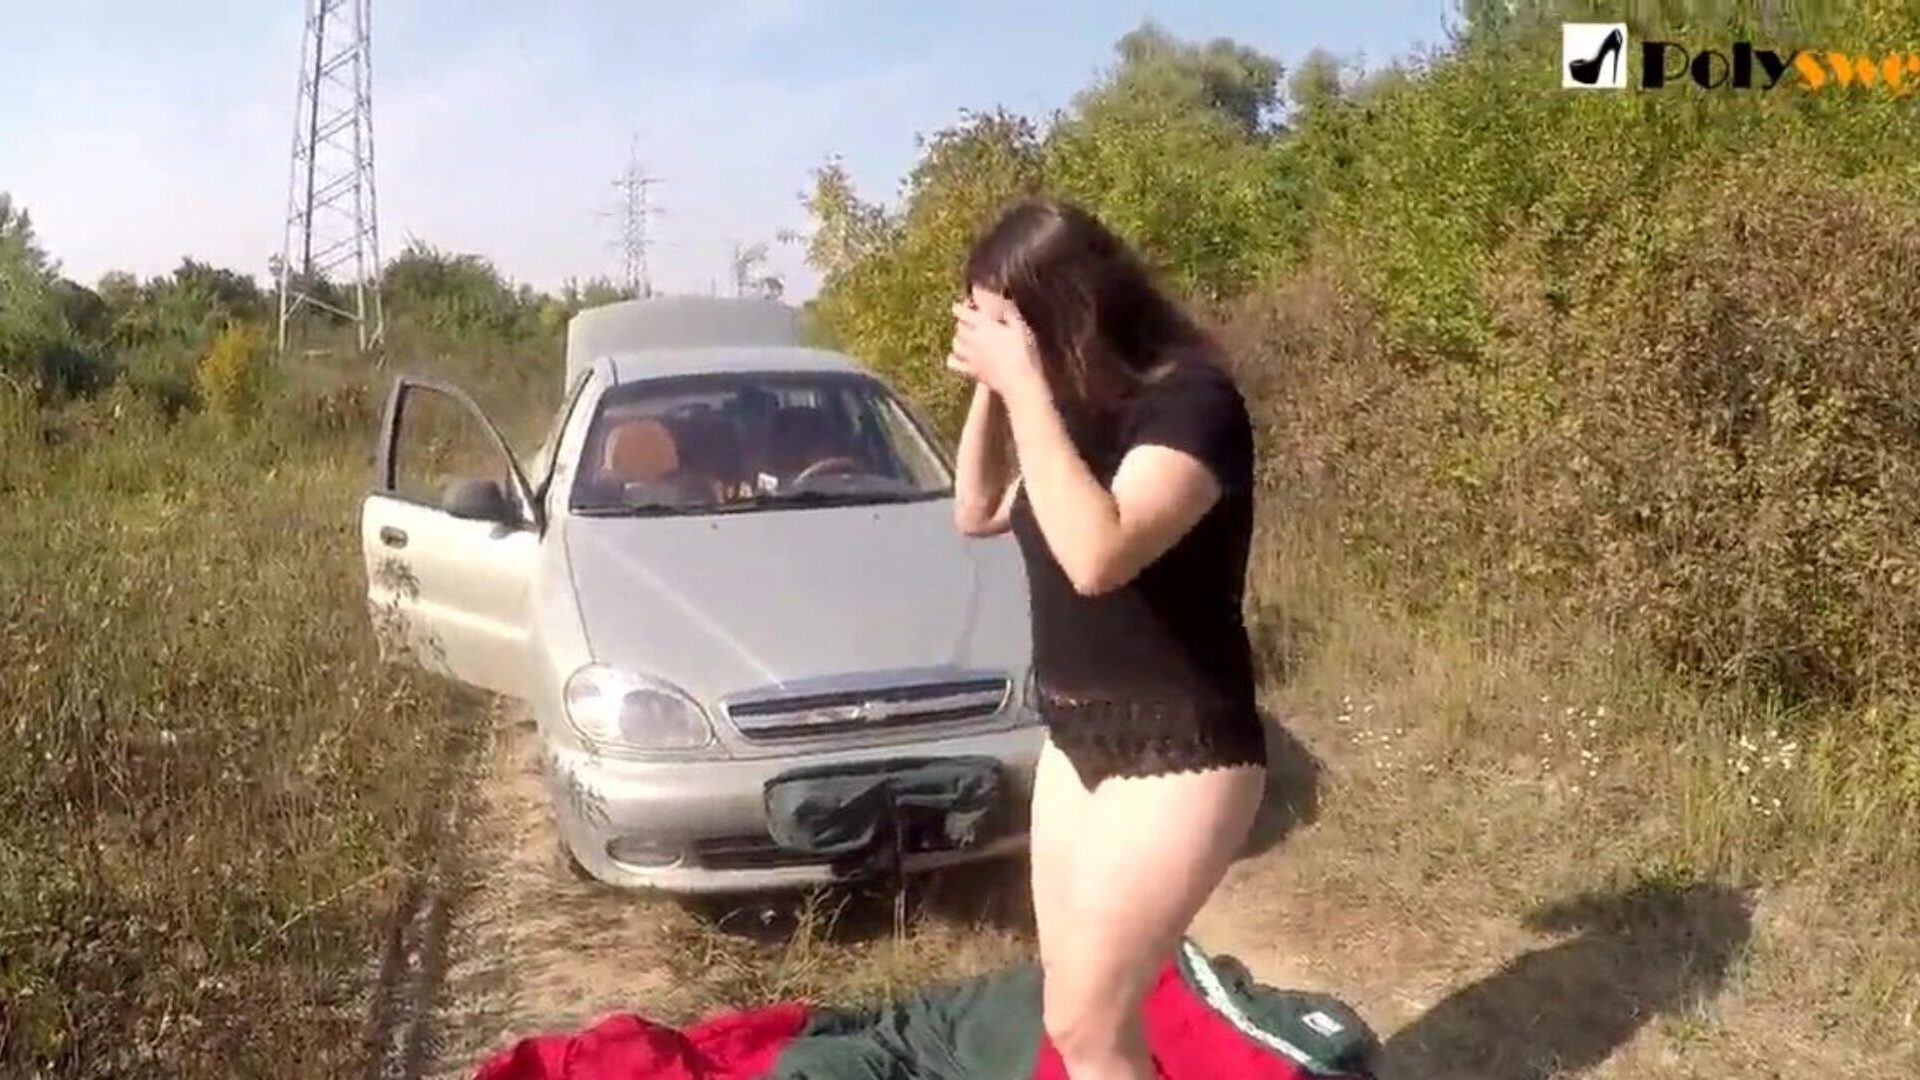 offentlig onani jente jeg ble tatt av en bil i begynnelsen av videoen)